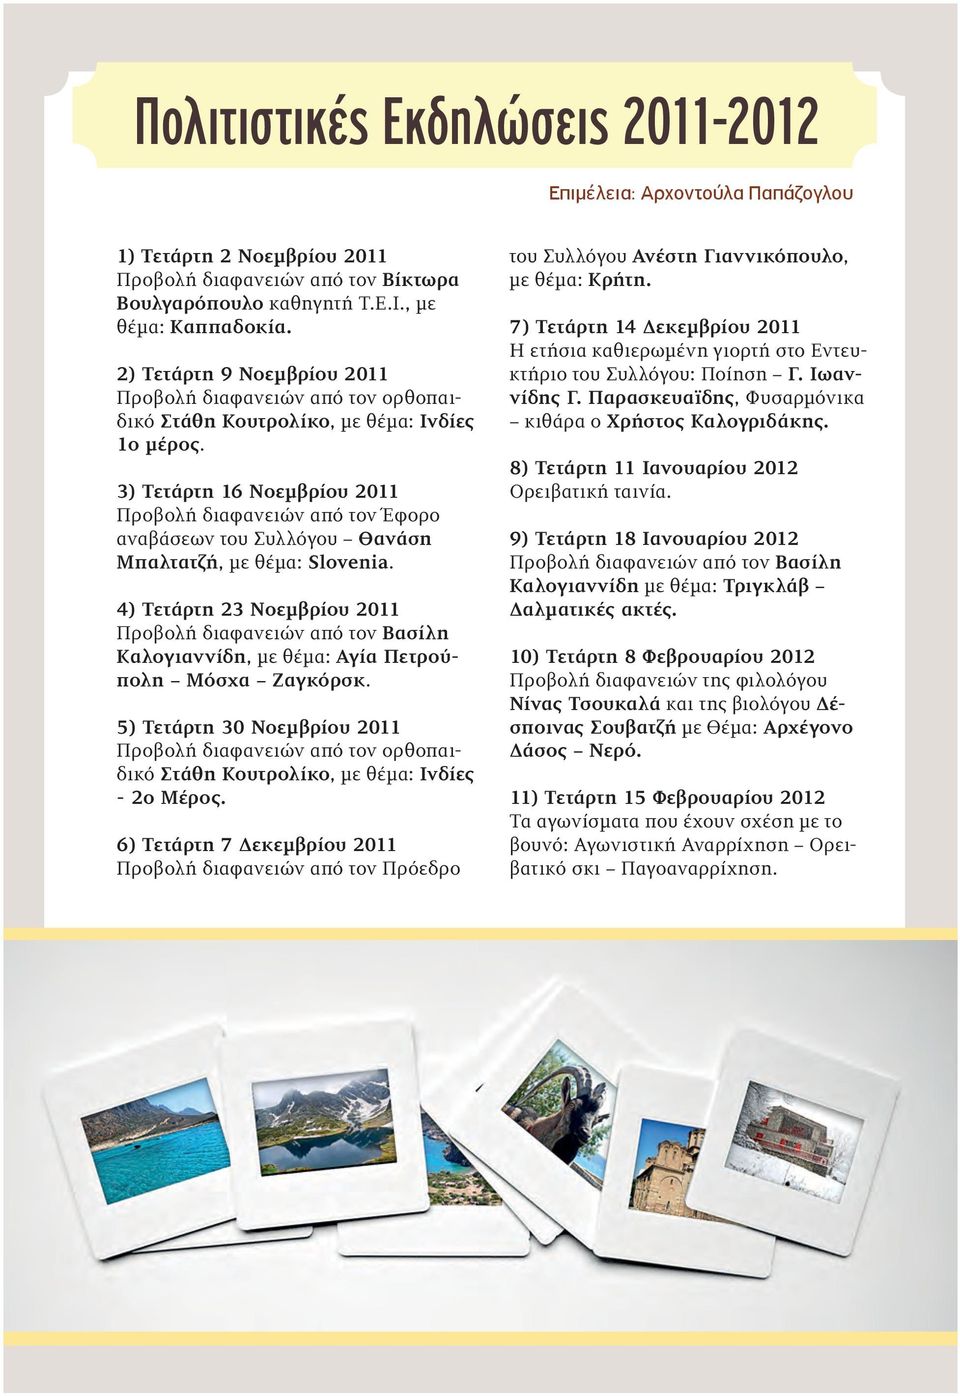 3) Τετάρτη 16 Νοεμβρίου 2011 Προβολή διαφανειών από τον Έφορο αναβάσεων του Συλλόγου Θανάση Μπαλτατζή, με θέμα: Slovenia.